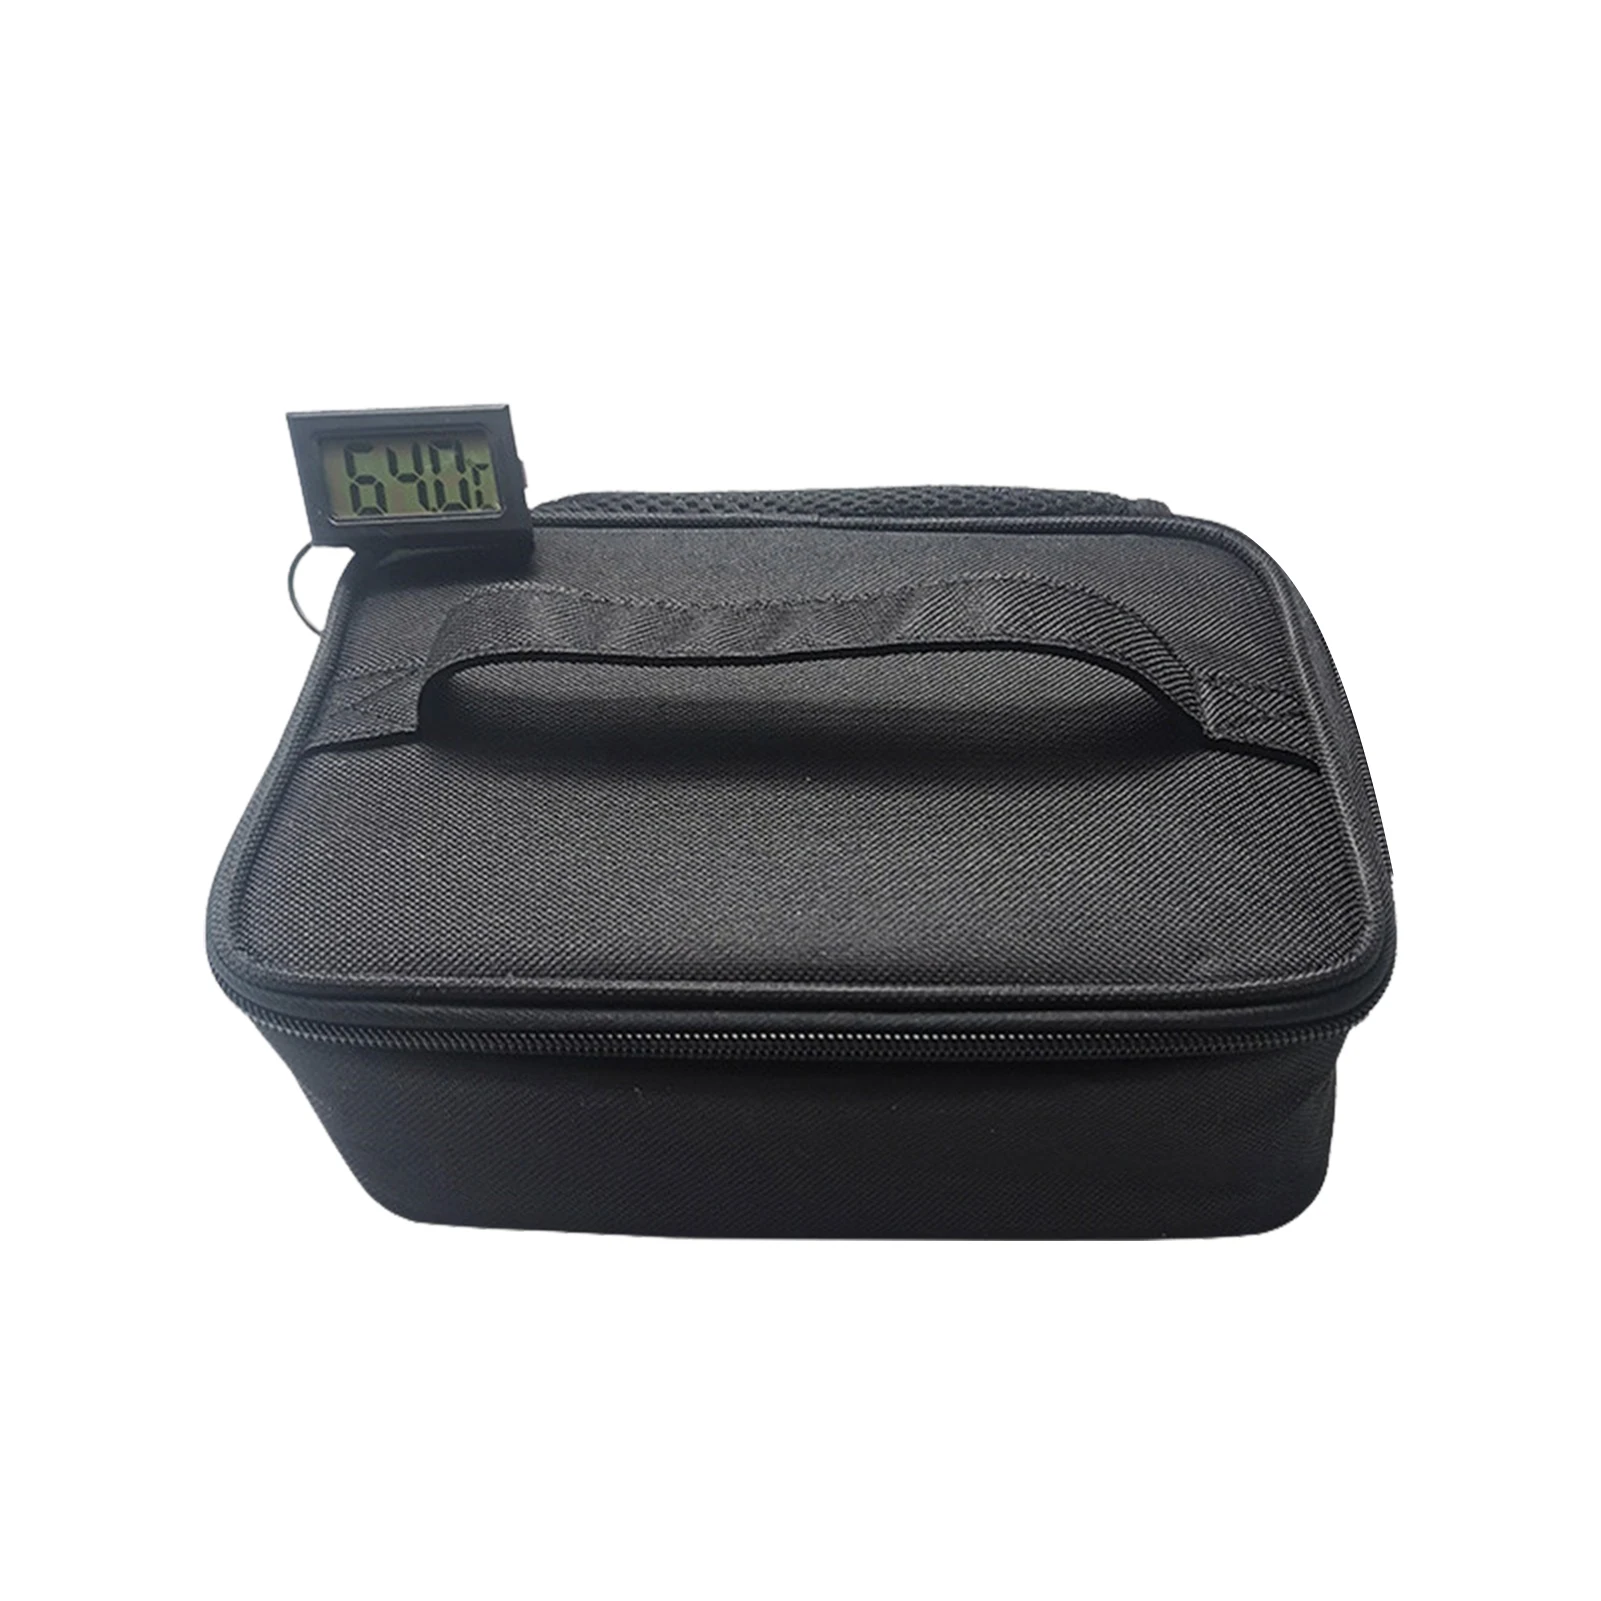 https://ae01.alicdn.com/kf/S18a818627f7b4c8ba41fea22e5878197D/Heated-Lunch-Bag-USB-Lunch-Bag-Warmer-USB-Plug-Lunch-Warming-Tote-Heating-Lunch-Box-Heater.jpg